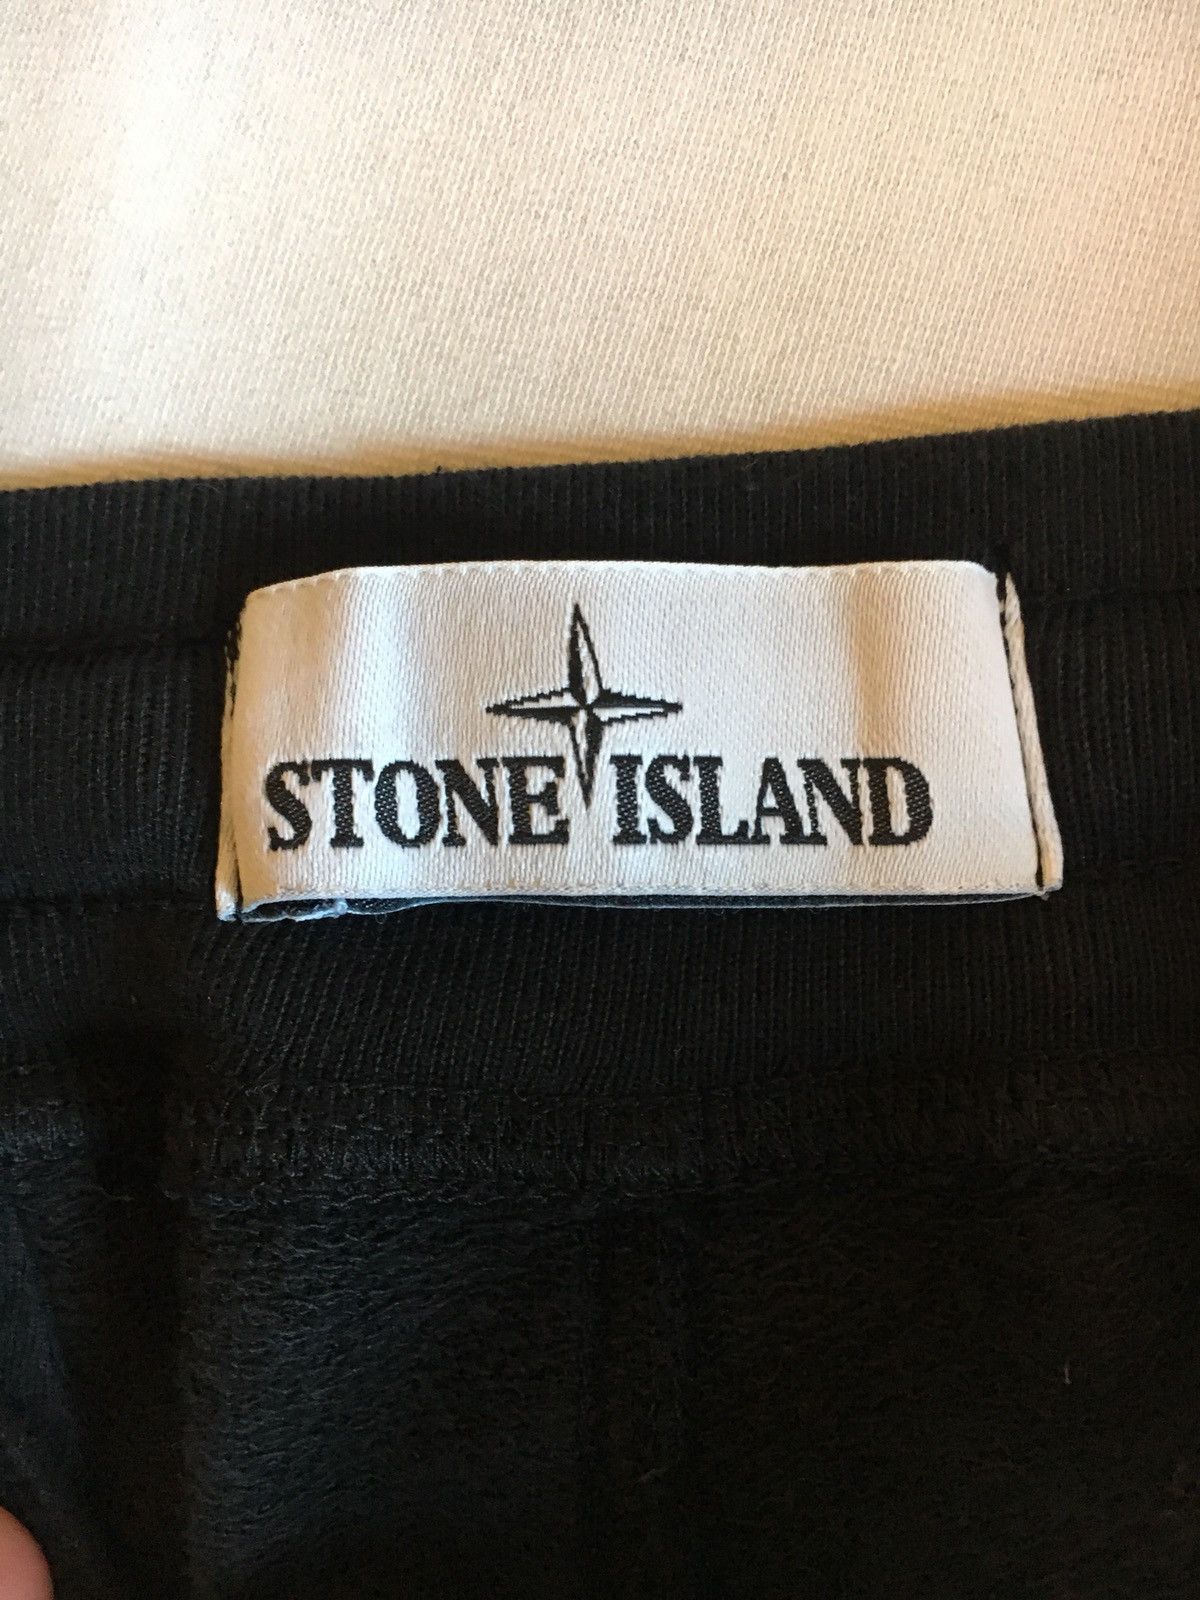 Stone Island Stone Island Cargo Sweatpants Size US 33 - 3 Thumbnail